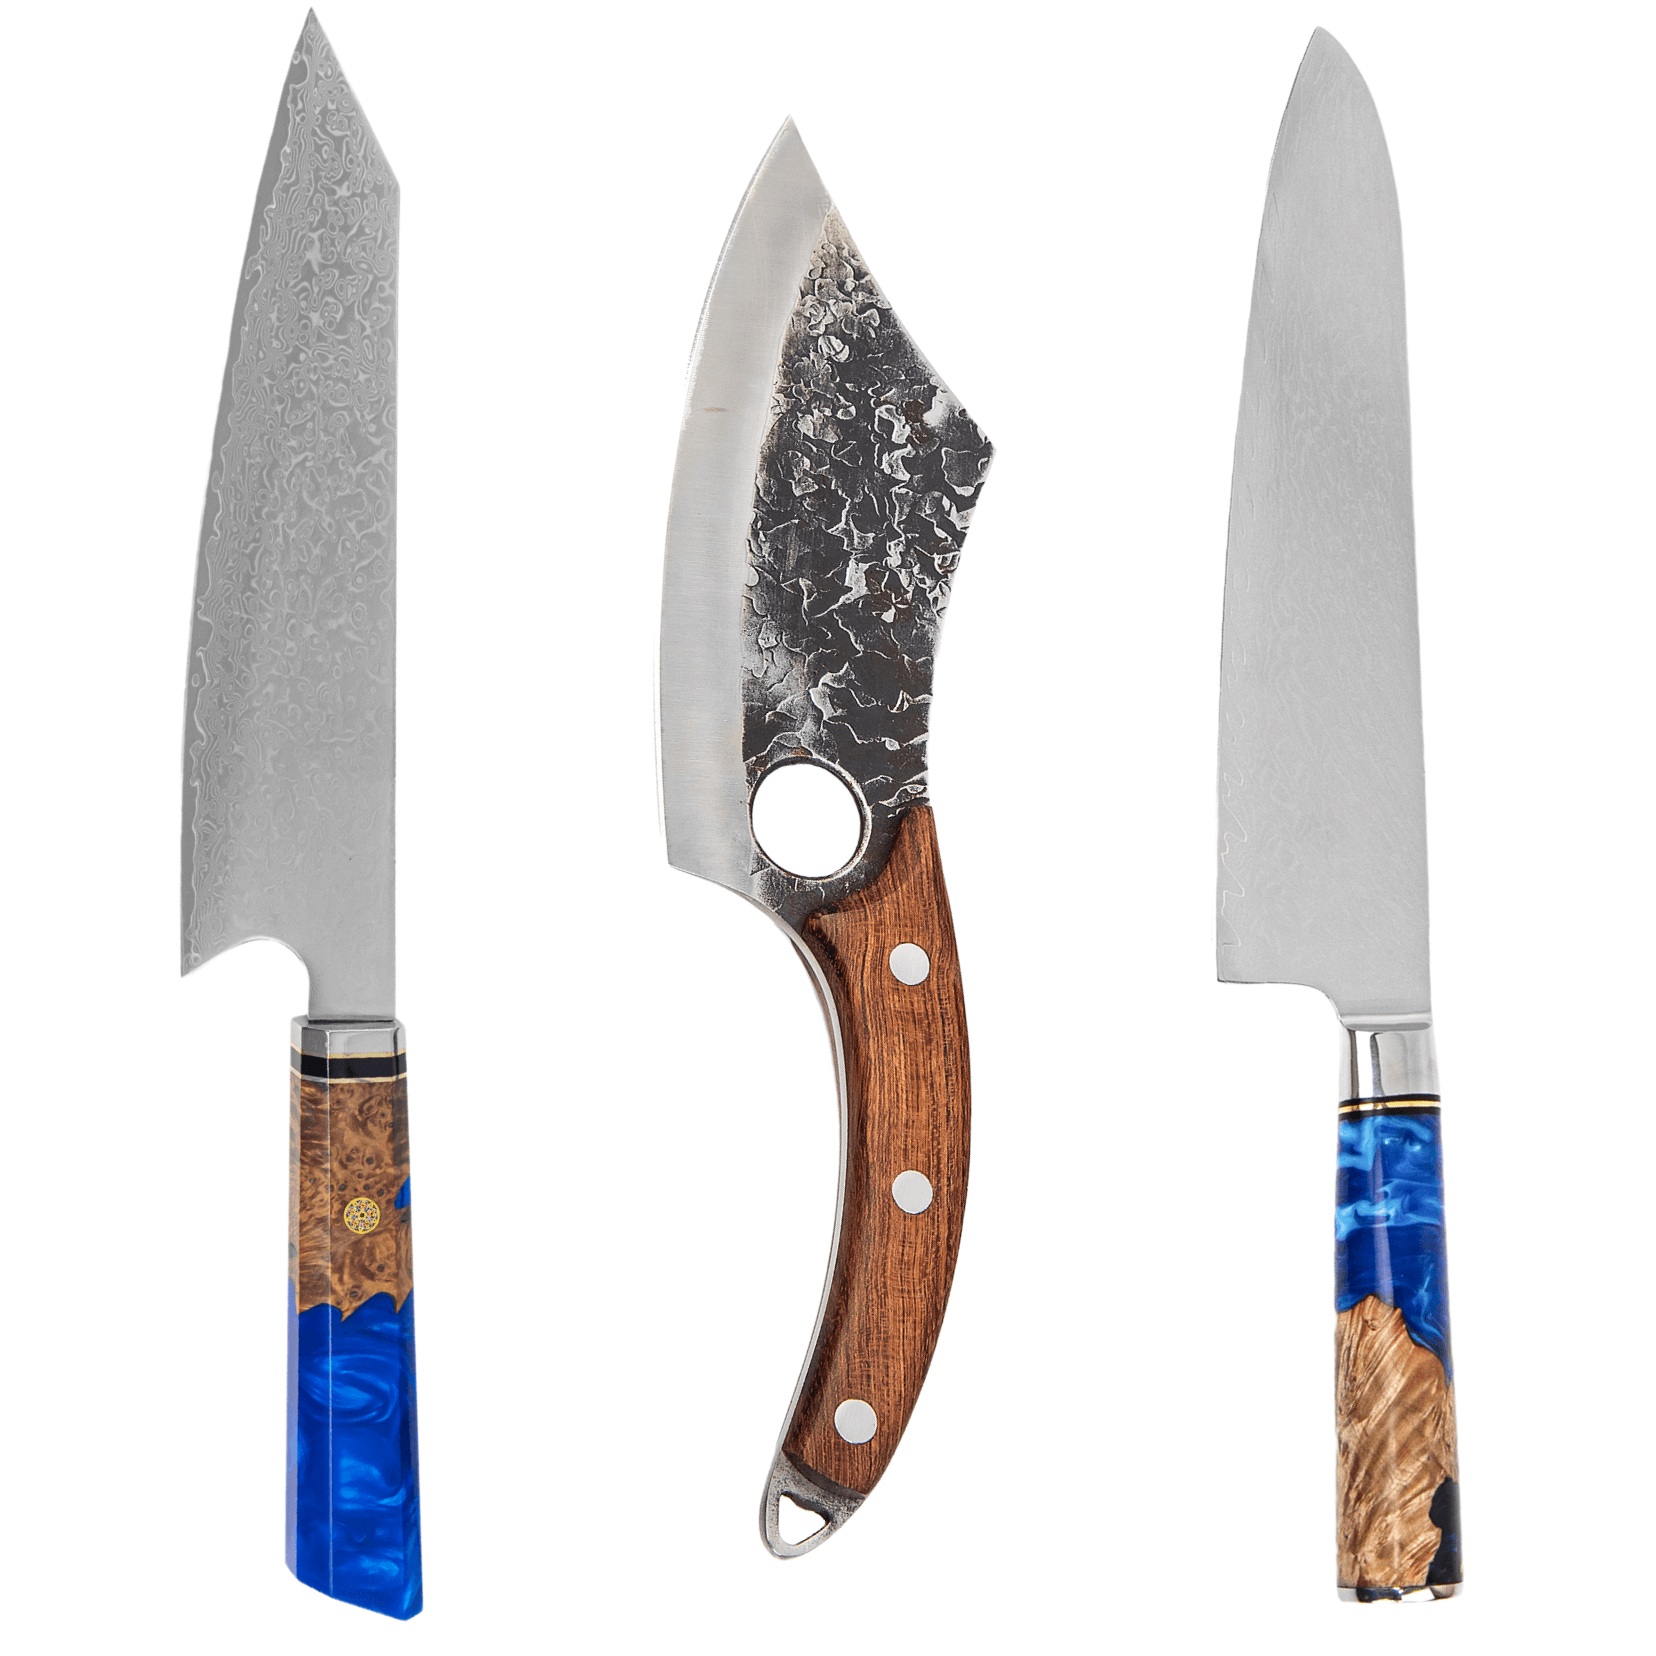 Kiritsuke knife vs gyuto knife vs cleaver knife